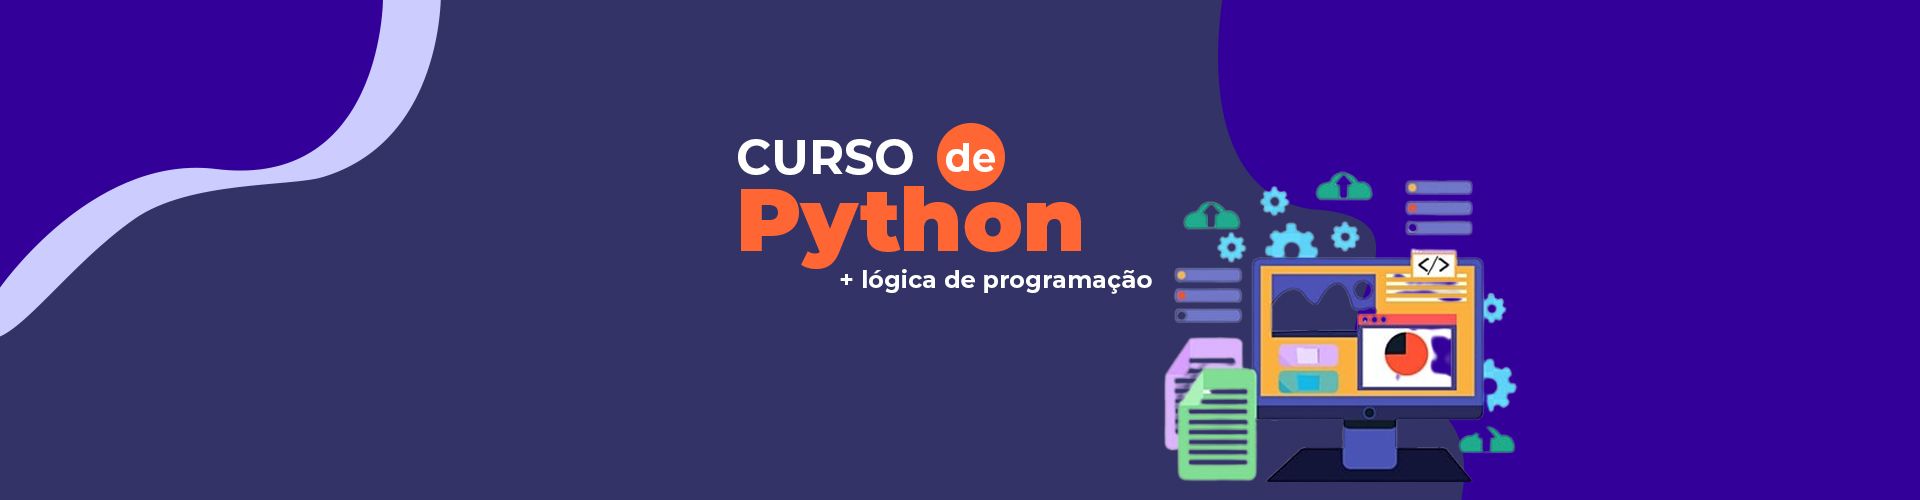 Curso de Python - Escola Cursos Maringá